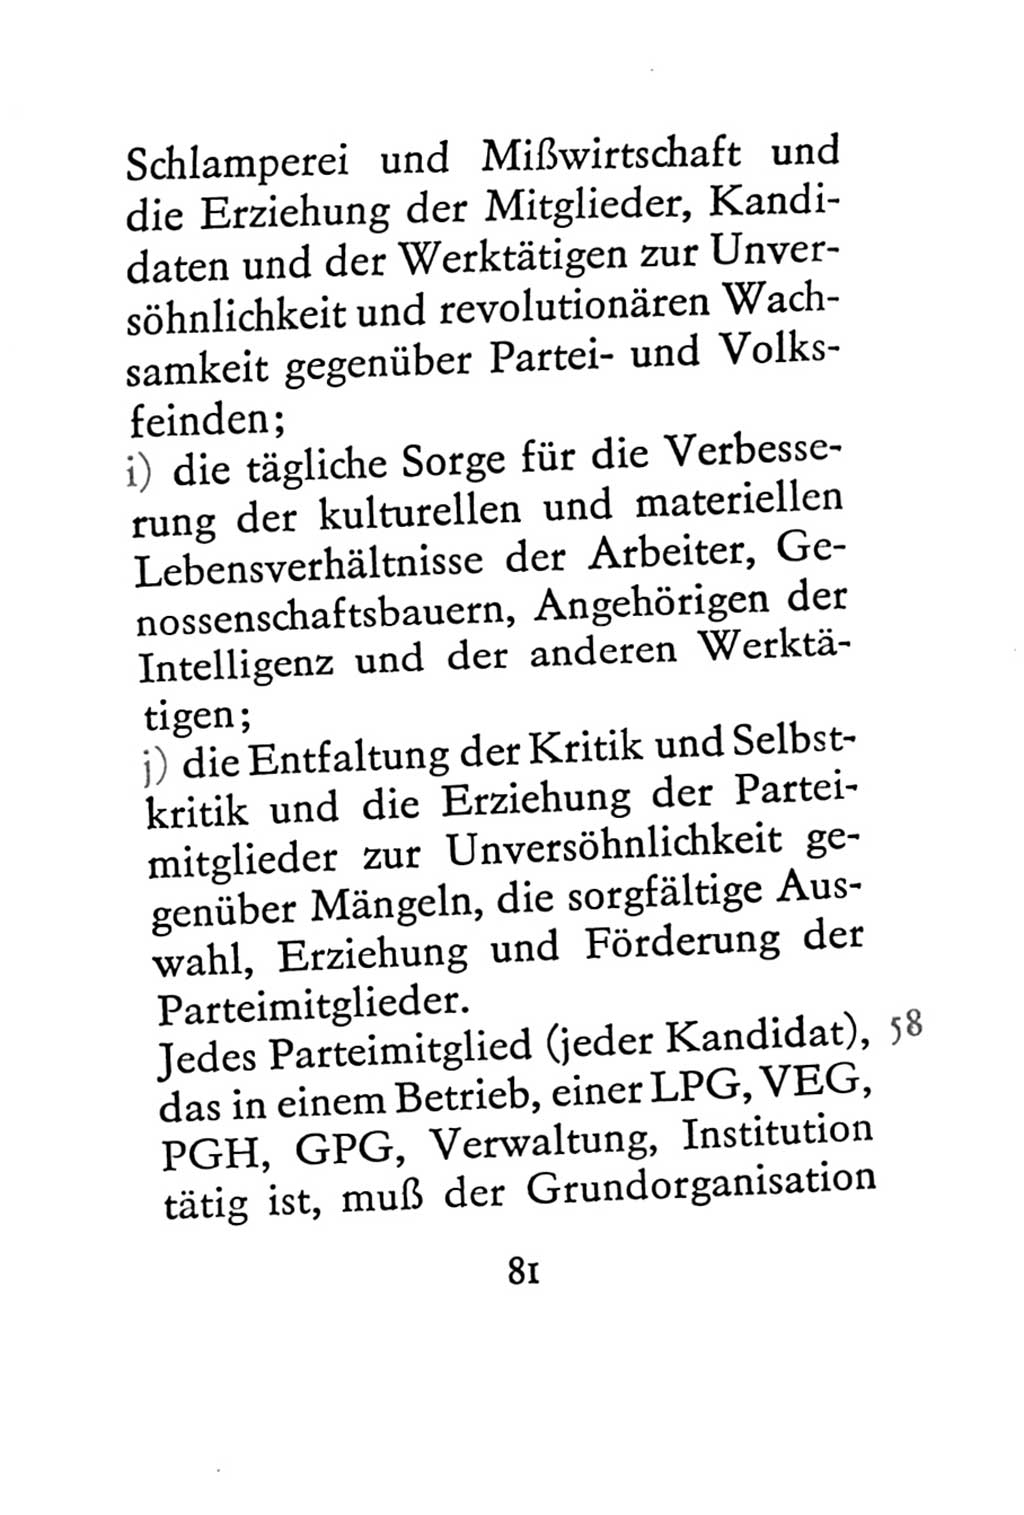 Statut der Sozialistischen Einheitspartei Deutschlands (SED) 1967, Seite 81 (St. SED DDR 1967, S. 81)